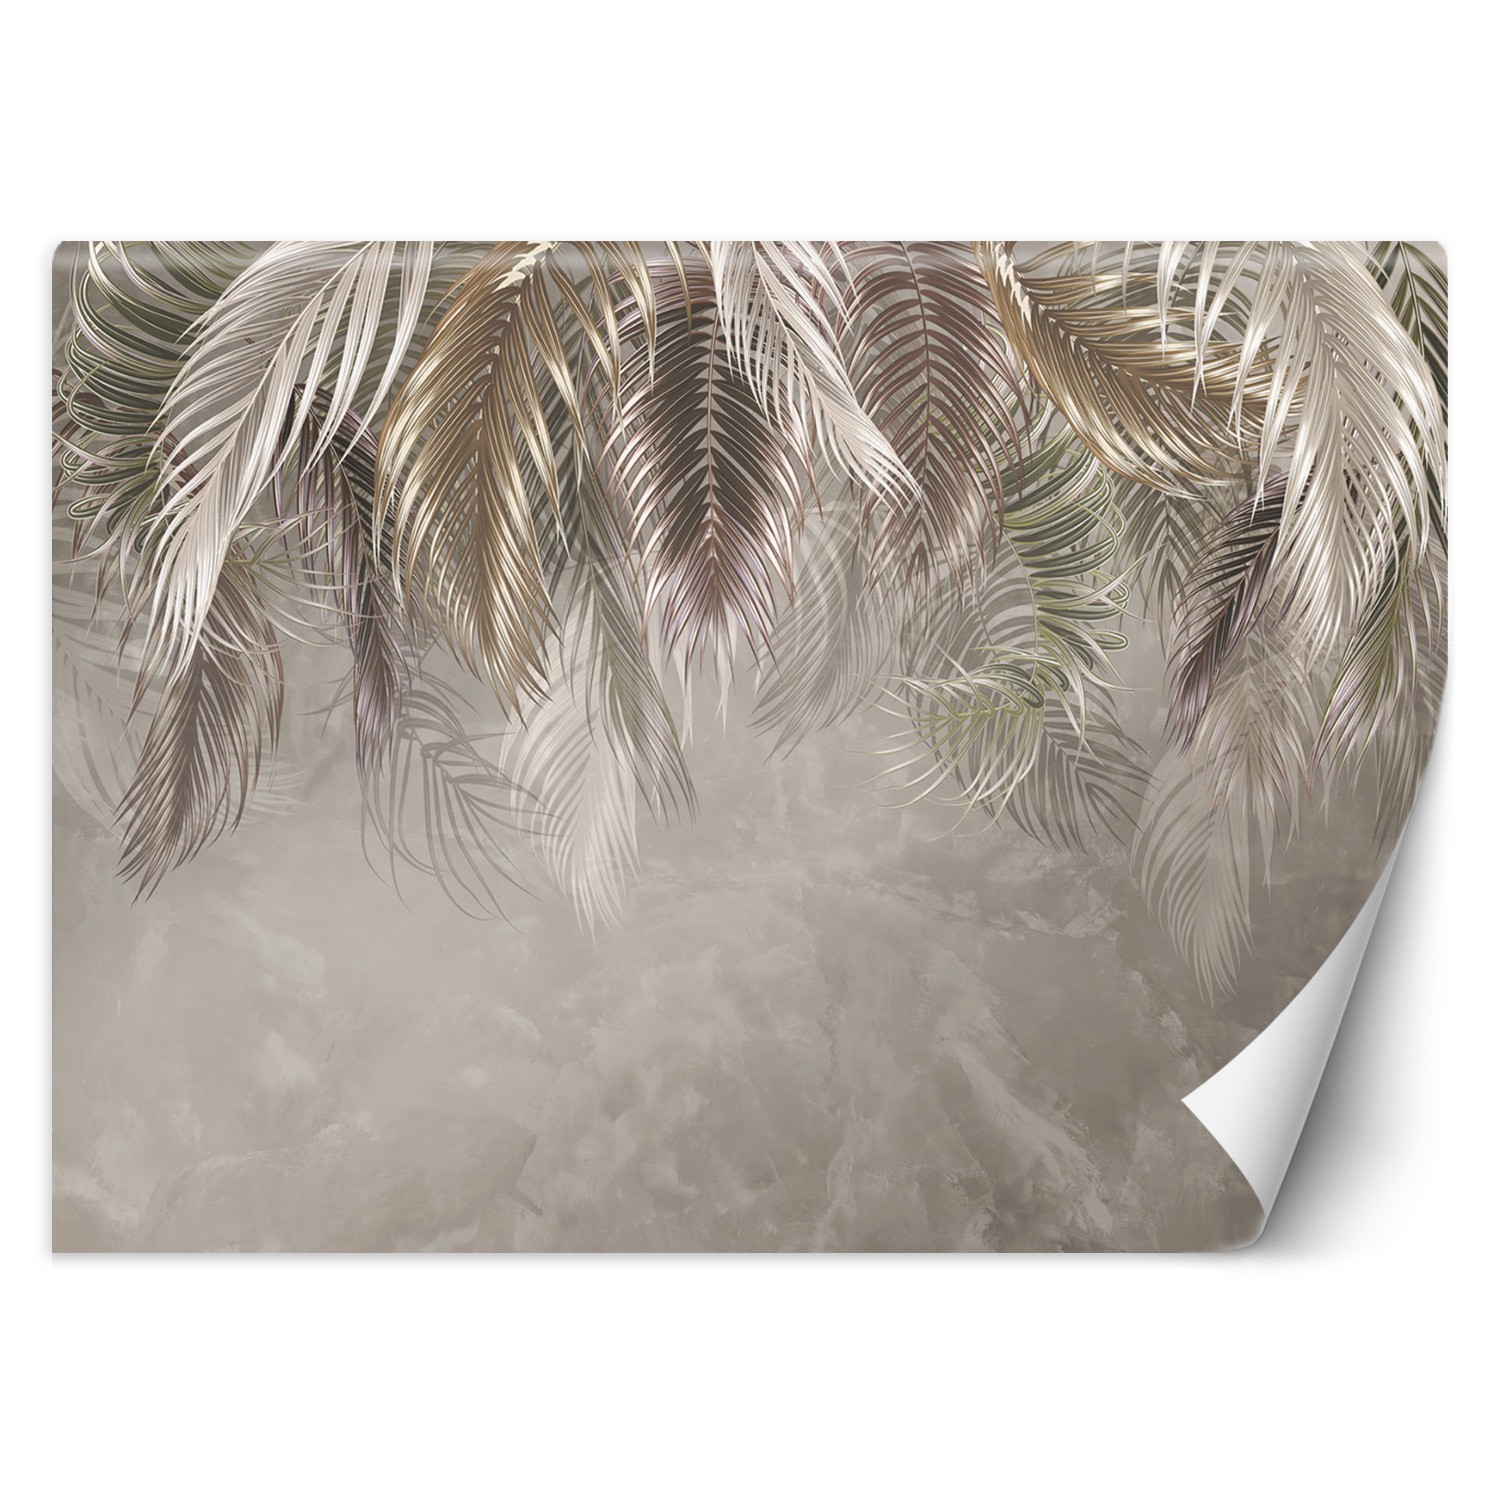 Trend24 – Behang – Palmbladeren 3D – Behangpapier – Fotobehang 3D – Behang Woonkamer – 450x315x2 cm – Incl. behanglijm